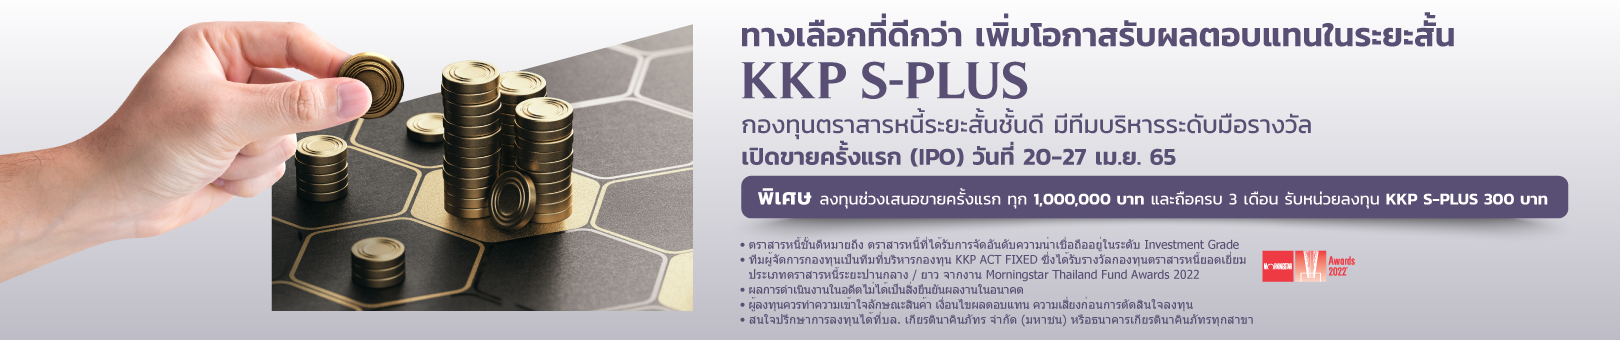 KKP-S-PLUS_1620x340_